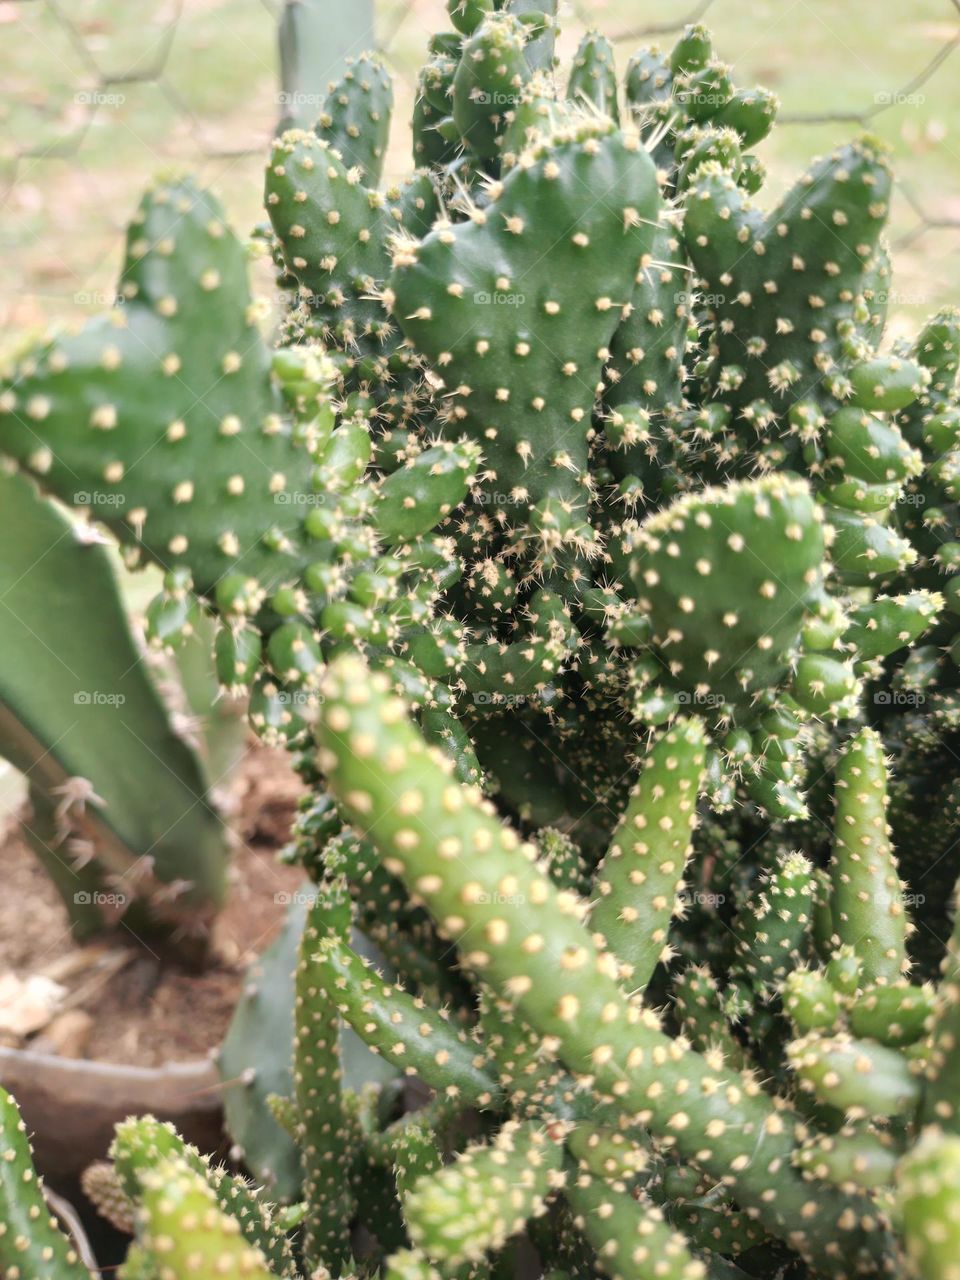 Cactus con sus increíbles formas